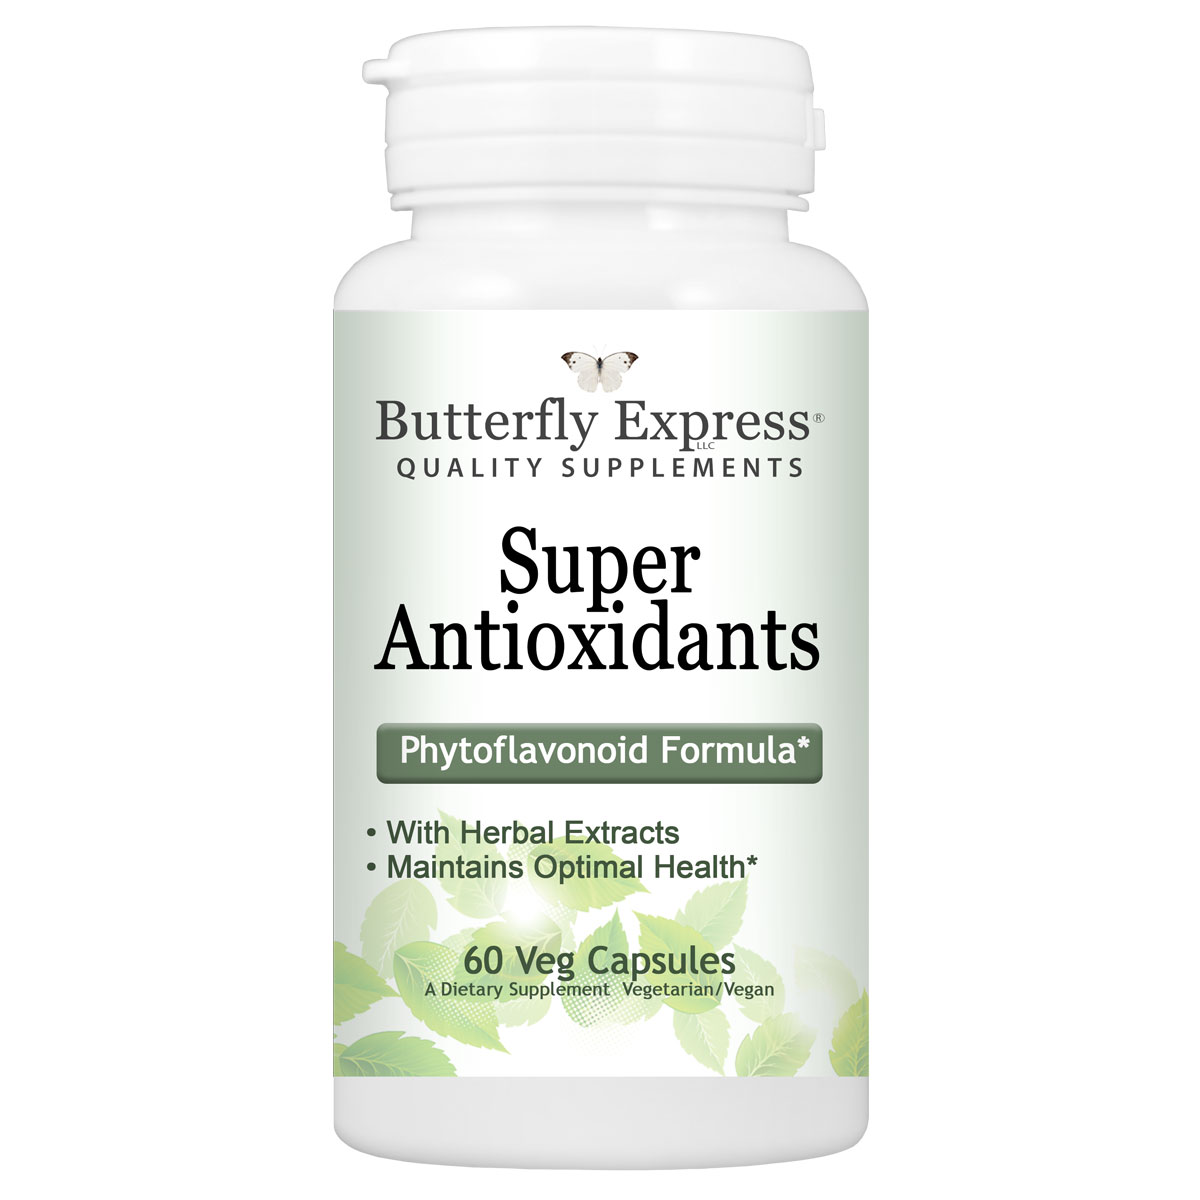 Super Antioxidants Supplement